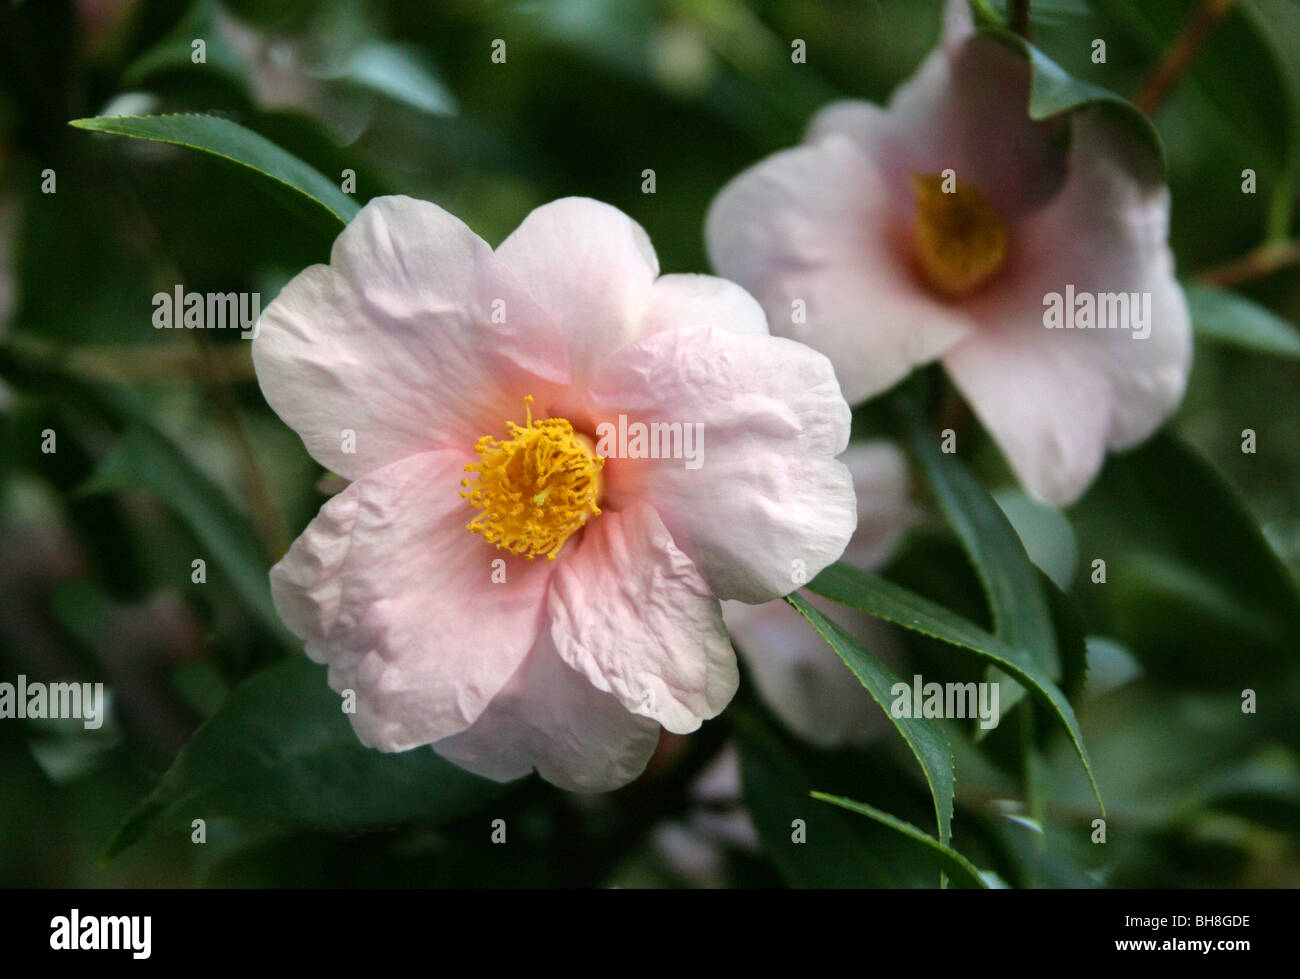 Camellia saluensis, Theaceae, China, Asia Stock Photo